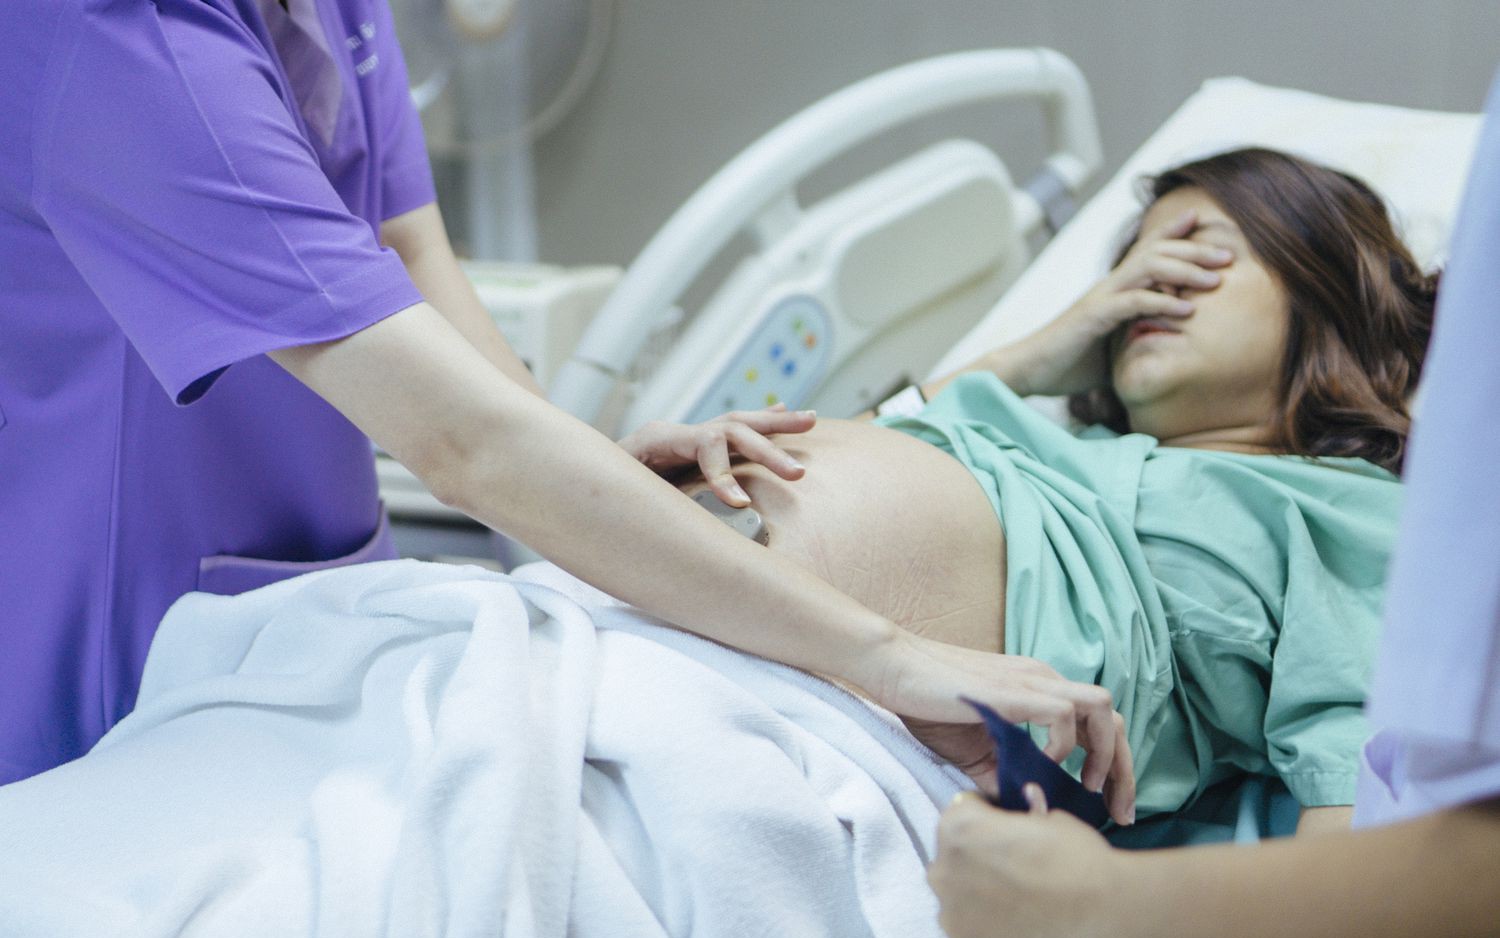 Rủi ro sức khỏe khi mang thai ở tuổi mãn kinh